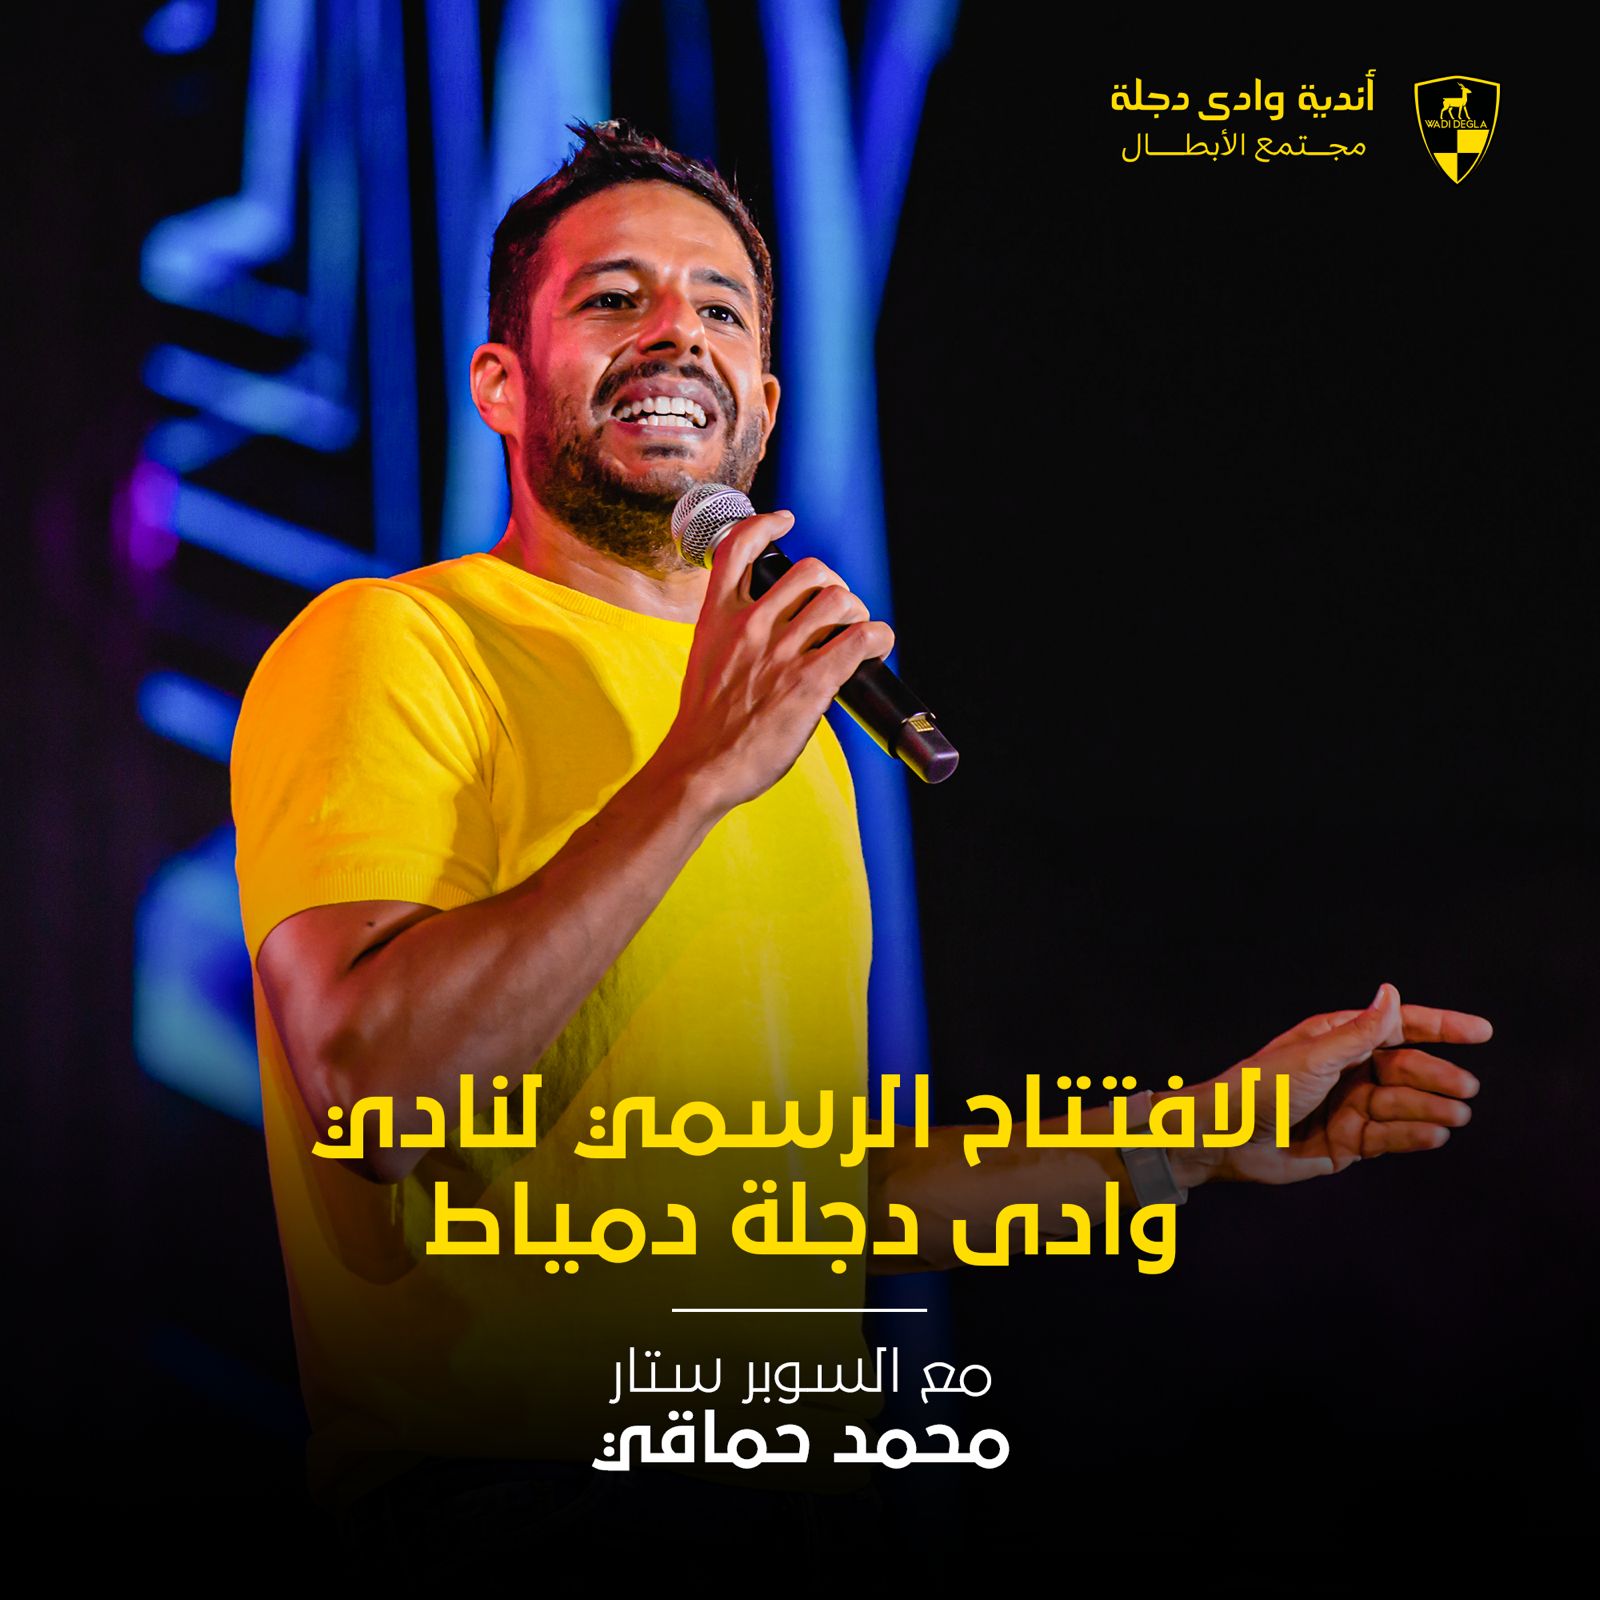 صورة محمد حماقي يحي حفلًا غنائيًا بمناسبة افتتاح نادى وادى دجلة دمياط 27 أبريل المقبل